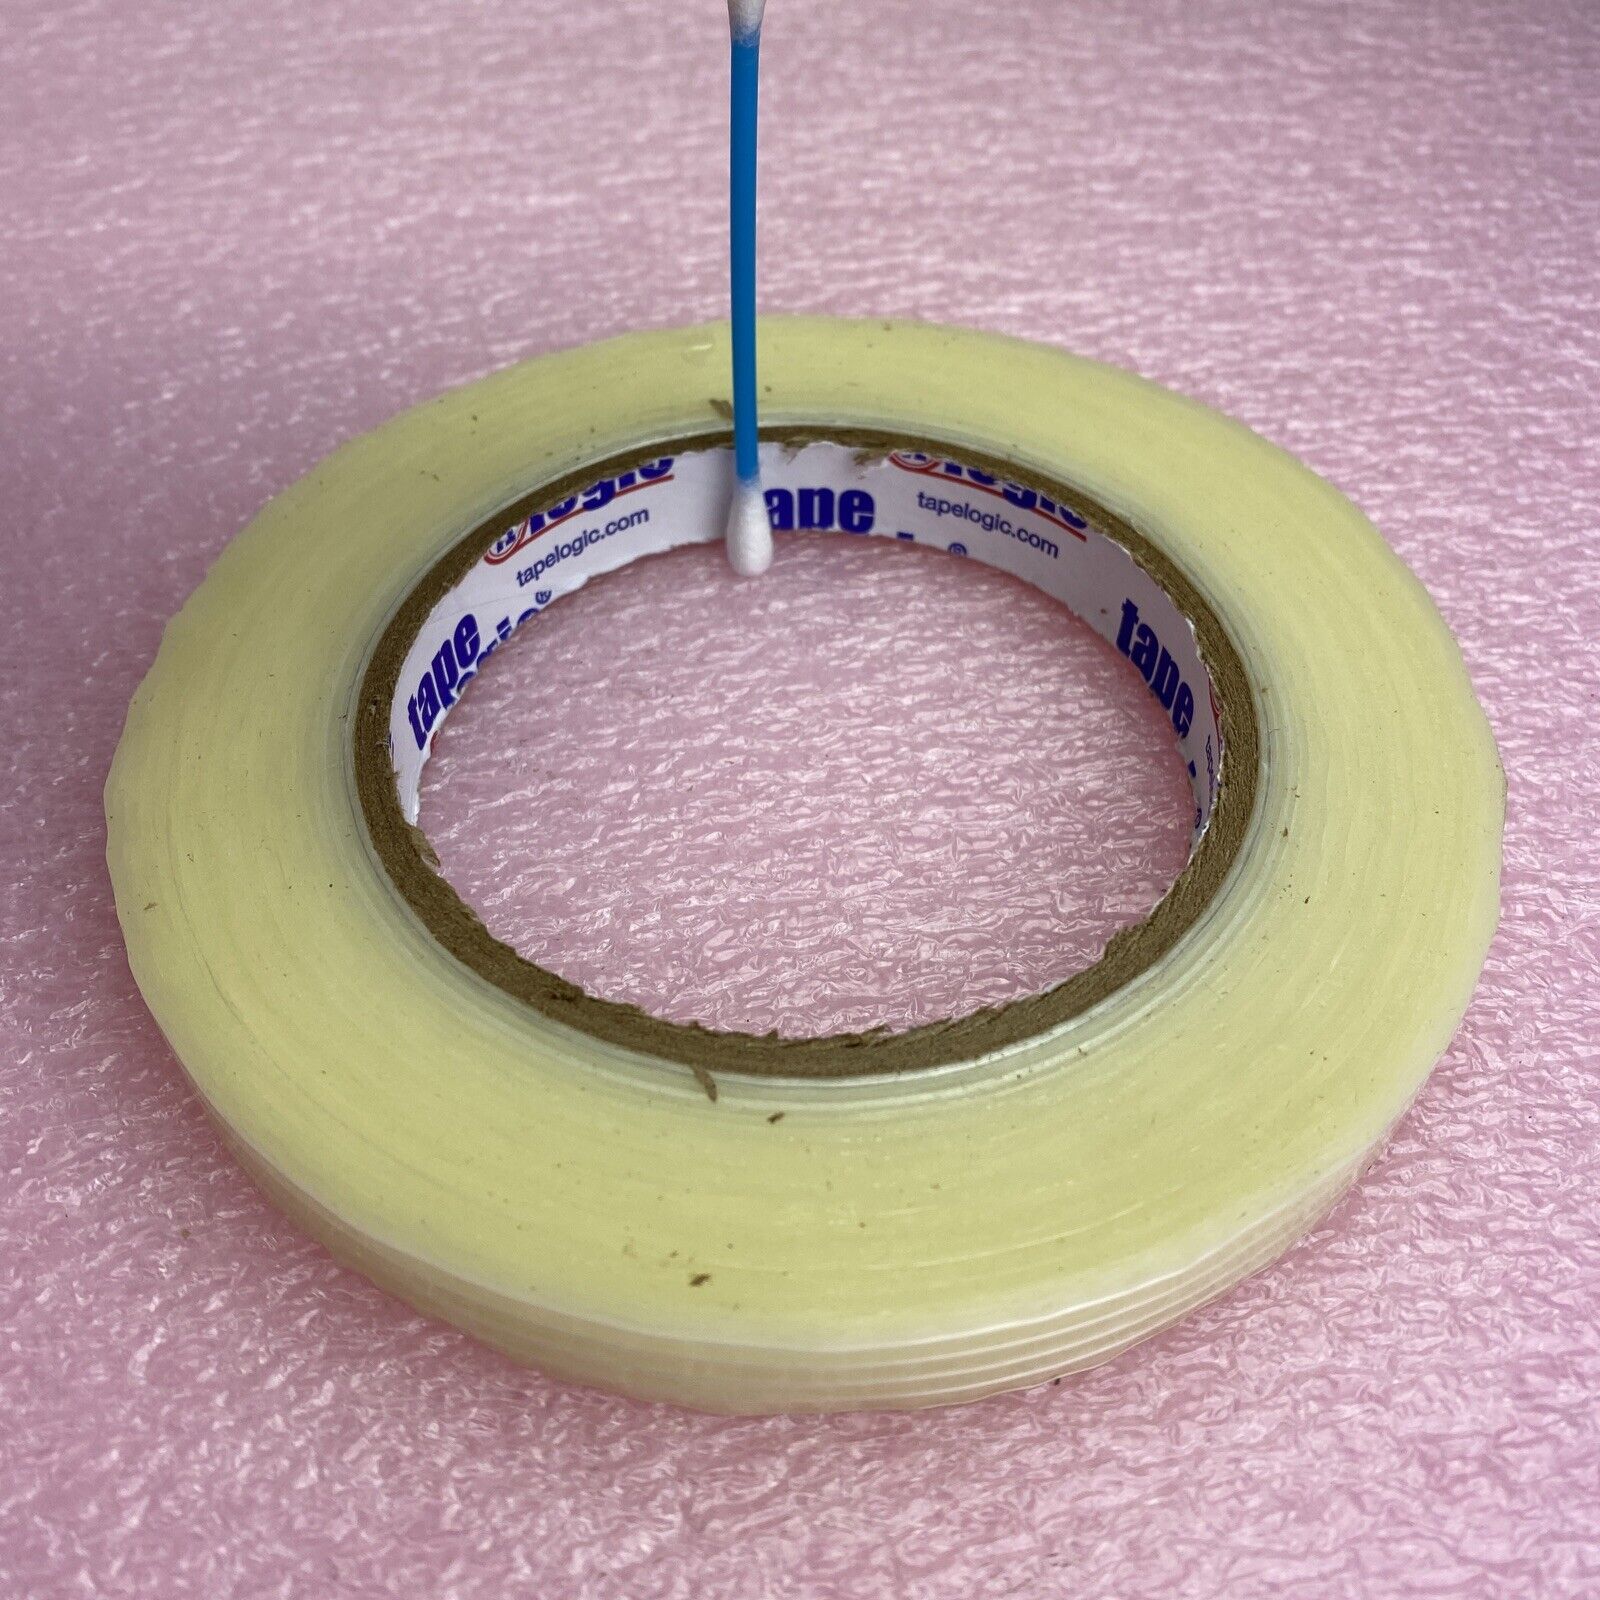 72 rolls tapelogic 1300 semi-clear Filament Tape 1/2" x 60yd or 12mm x 55m